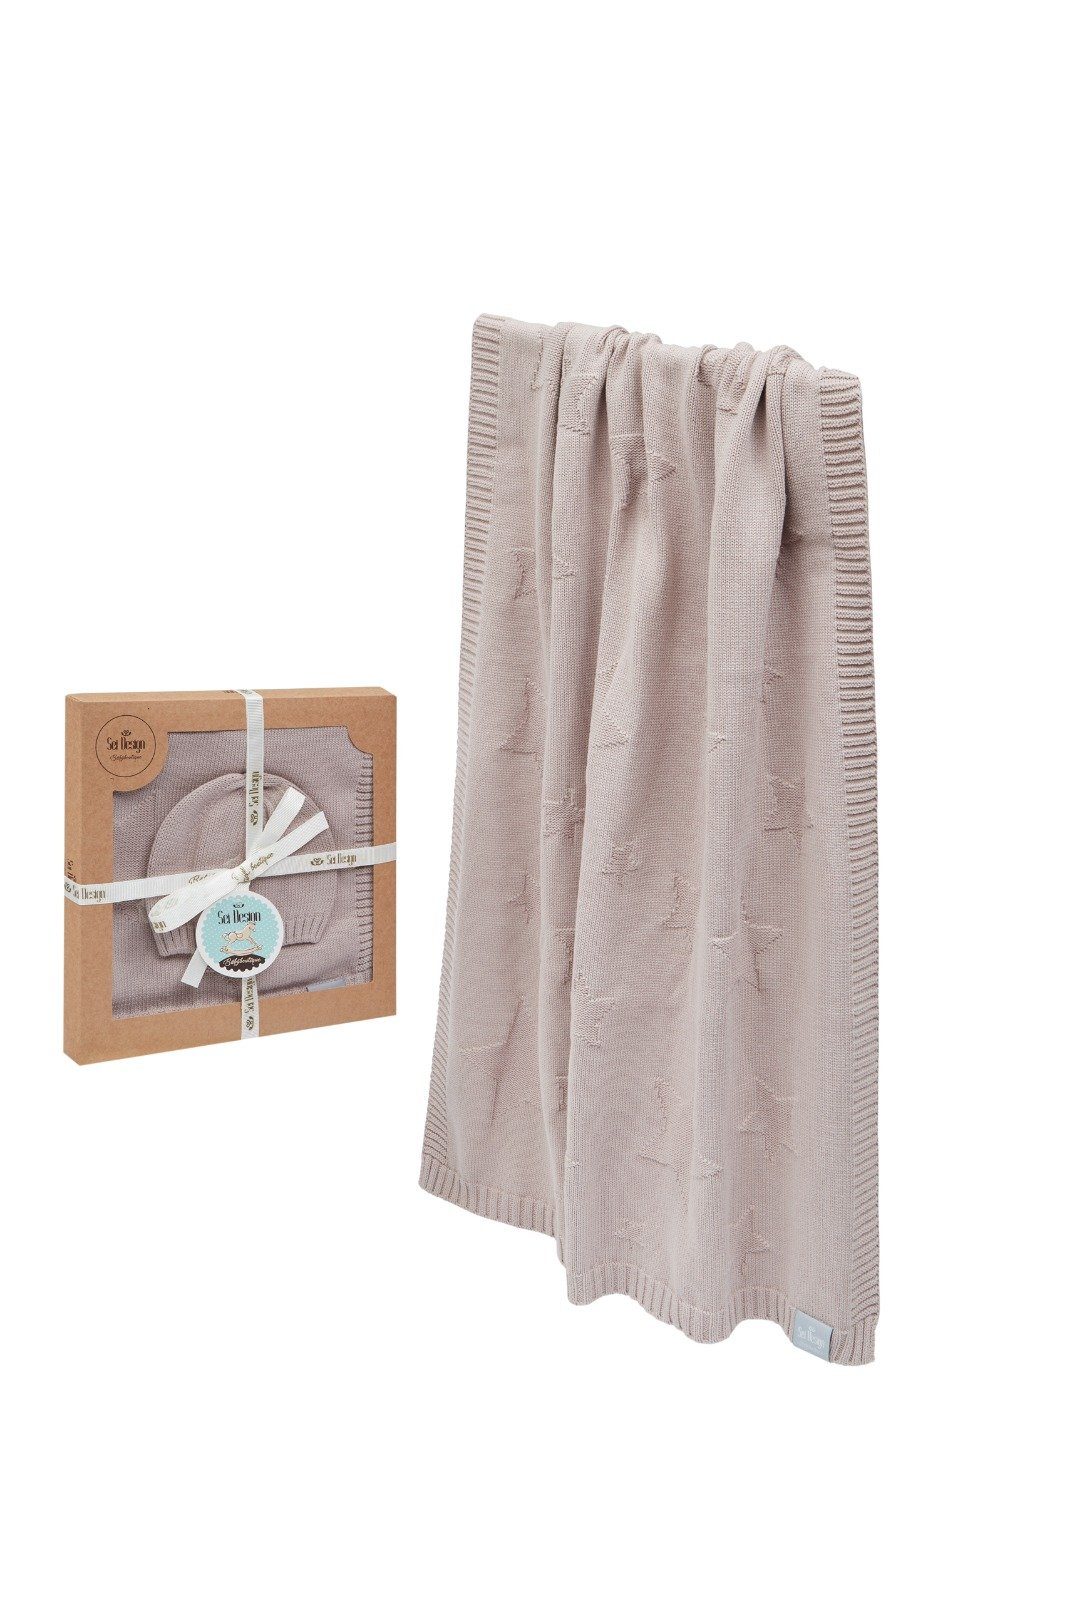 SEI Sand Geschenkverpackung Baumwolle, 100% - Babydecke Design, BIO inkl. Strickdecke Shifting 90x70cm aus